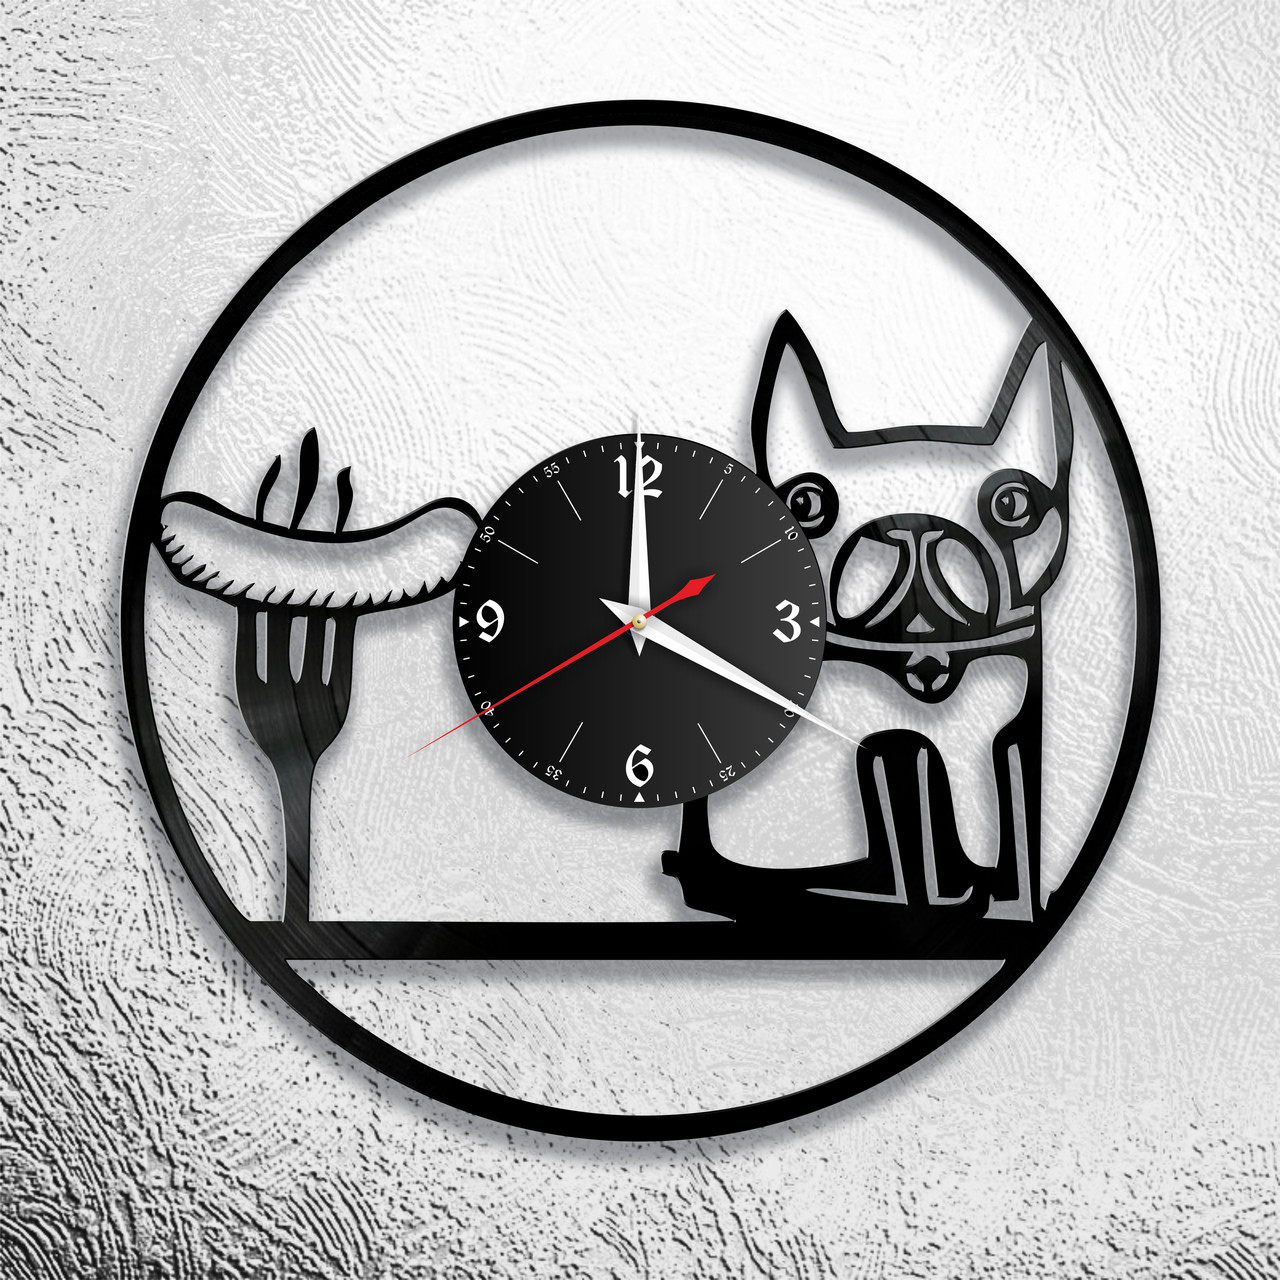 Оригинальные часы из виниловых пластинок "Собака" версия 4, фото 1